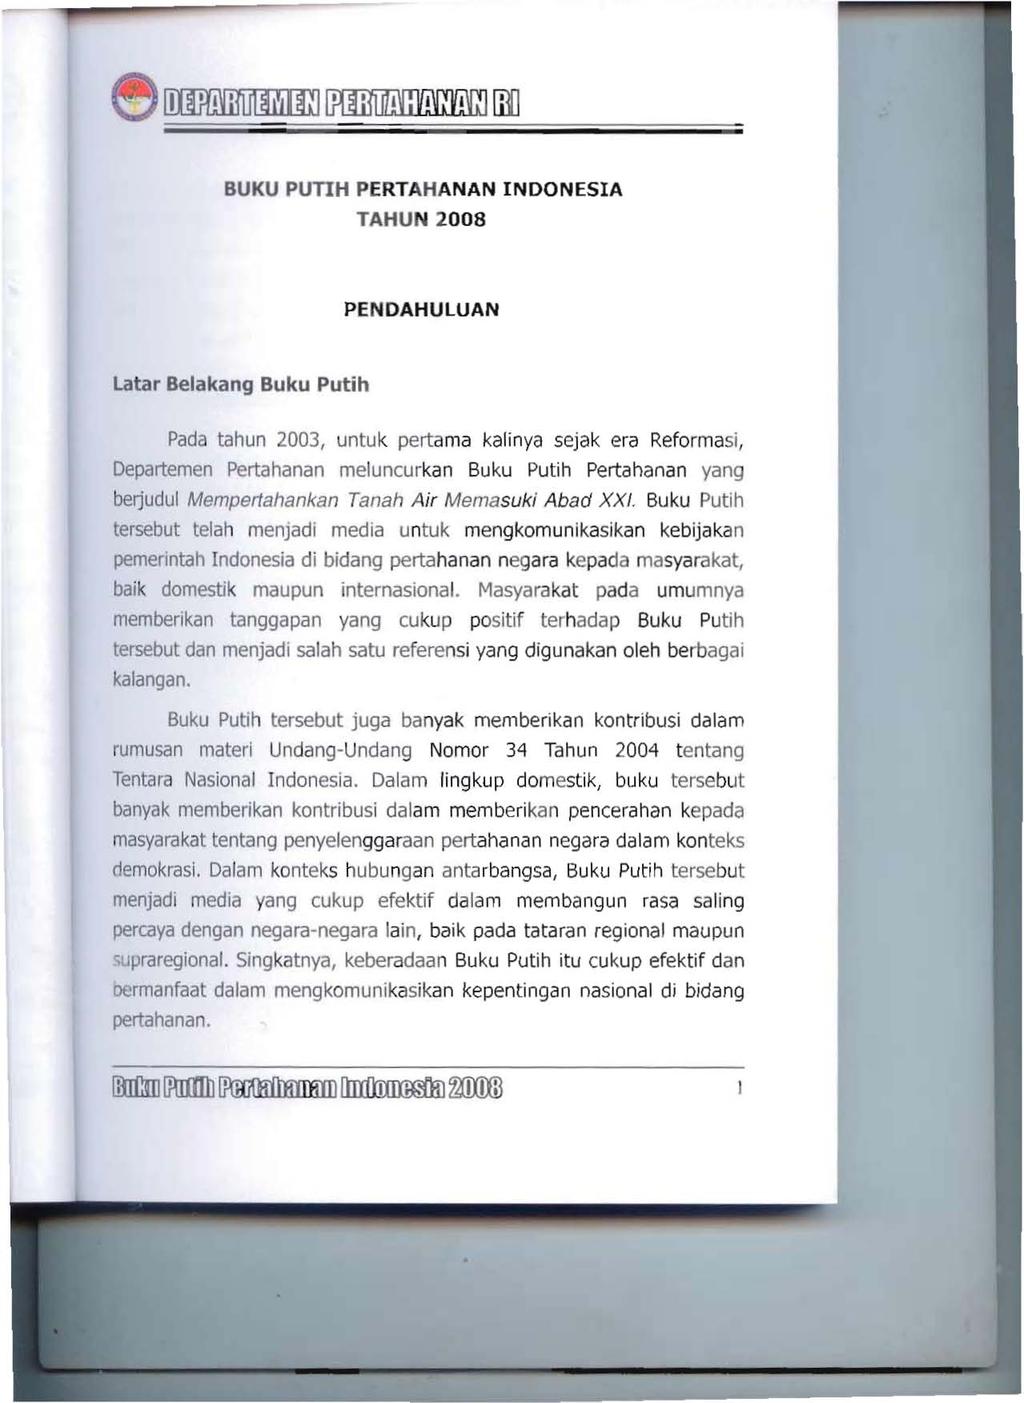 BUKU PUTIH PERTAHANAN INDONESIA TAHUN 2008 PENDAHULUAN Lata, Belakang Buku Putih Pada tahun 2003, untuk pertama kalinya sejak era Reformasi, Departemen Pertahanan meluncurkan Buku Putih Pertahanan